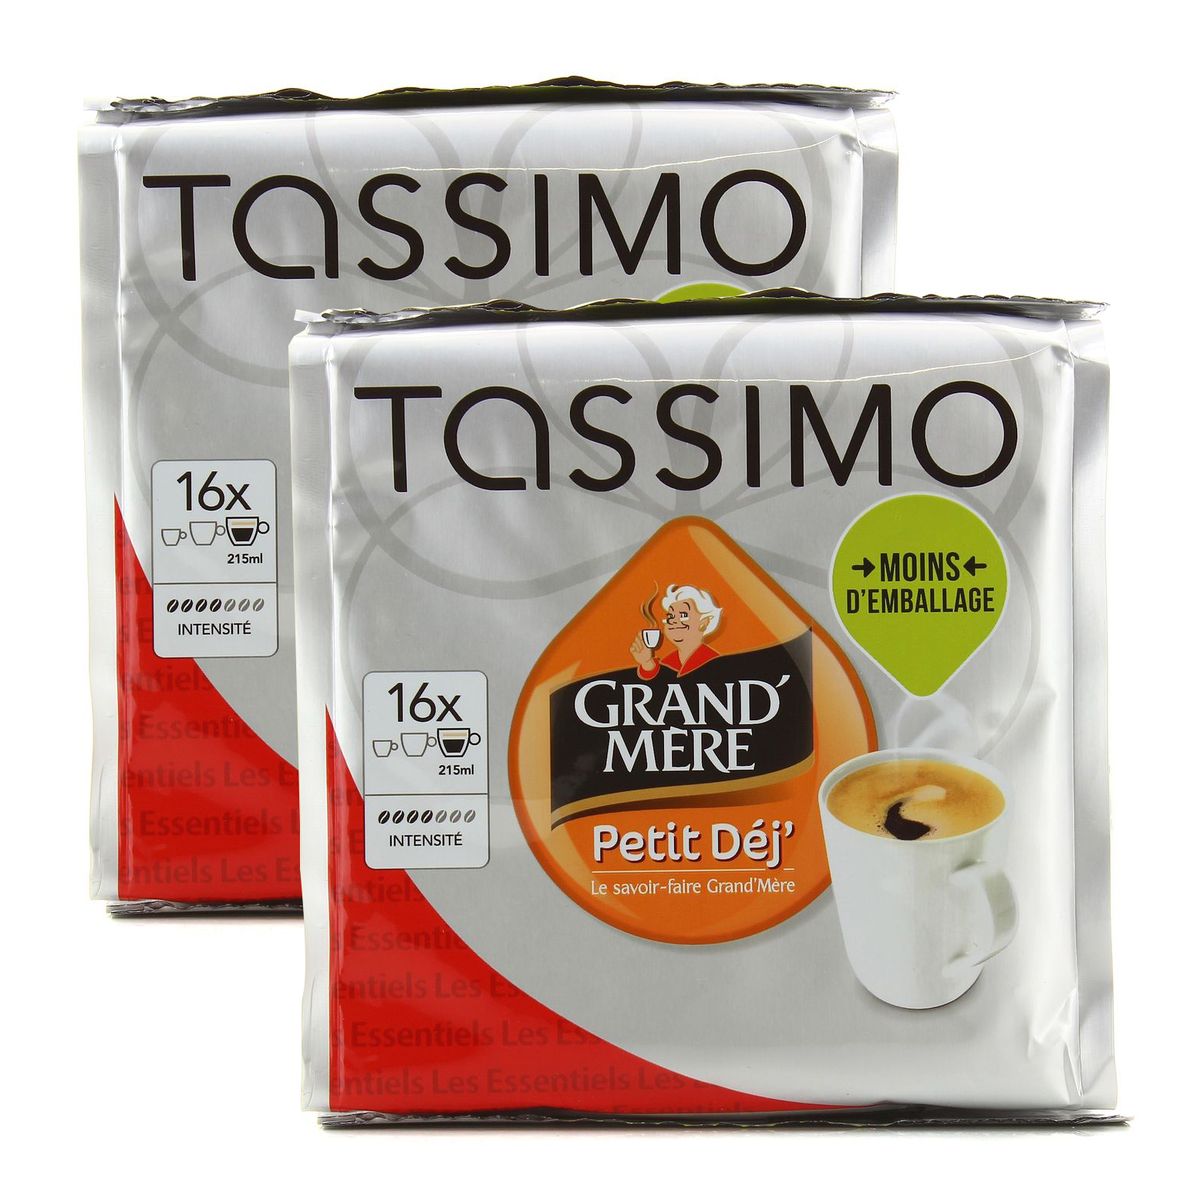 Achat / Vente Promotion Tassimo L'or espresso classique, 16 dosettes